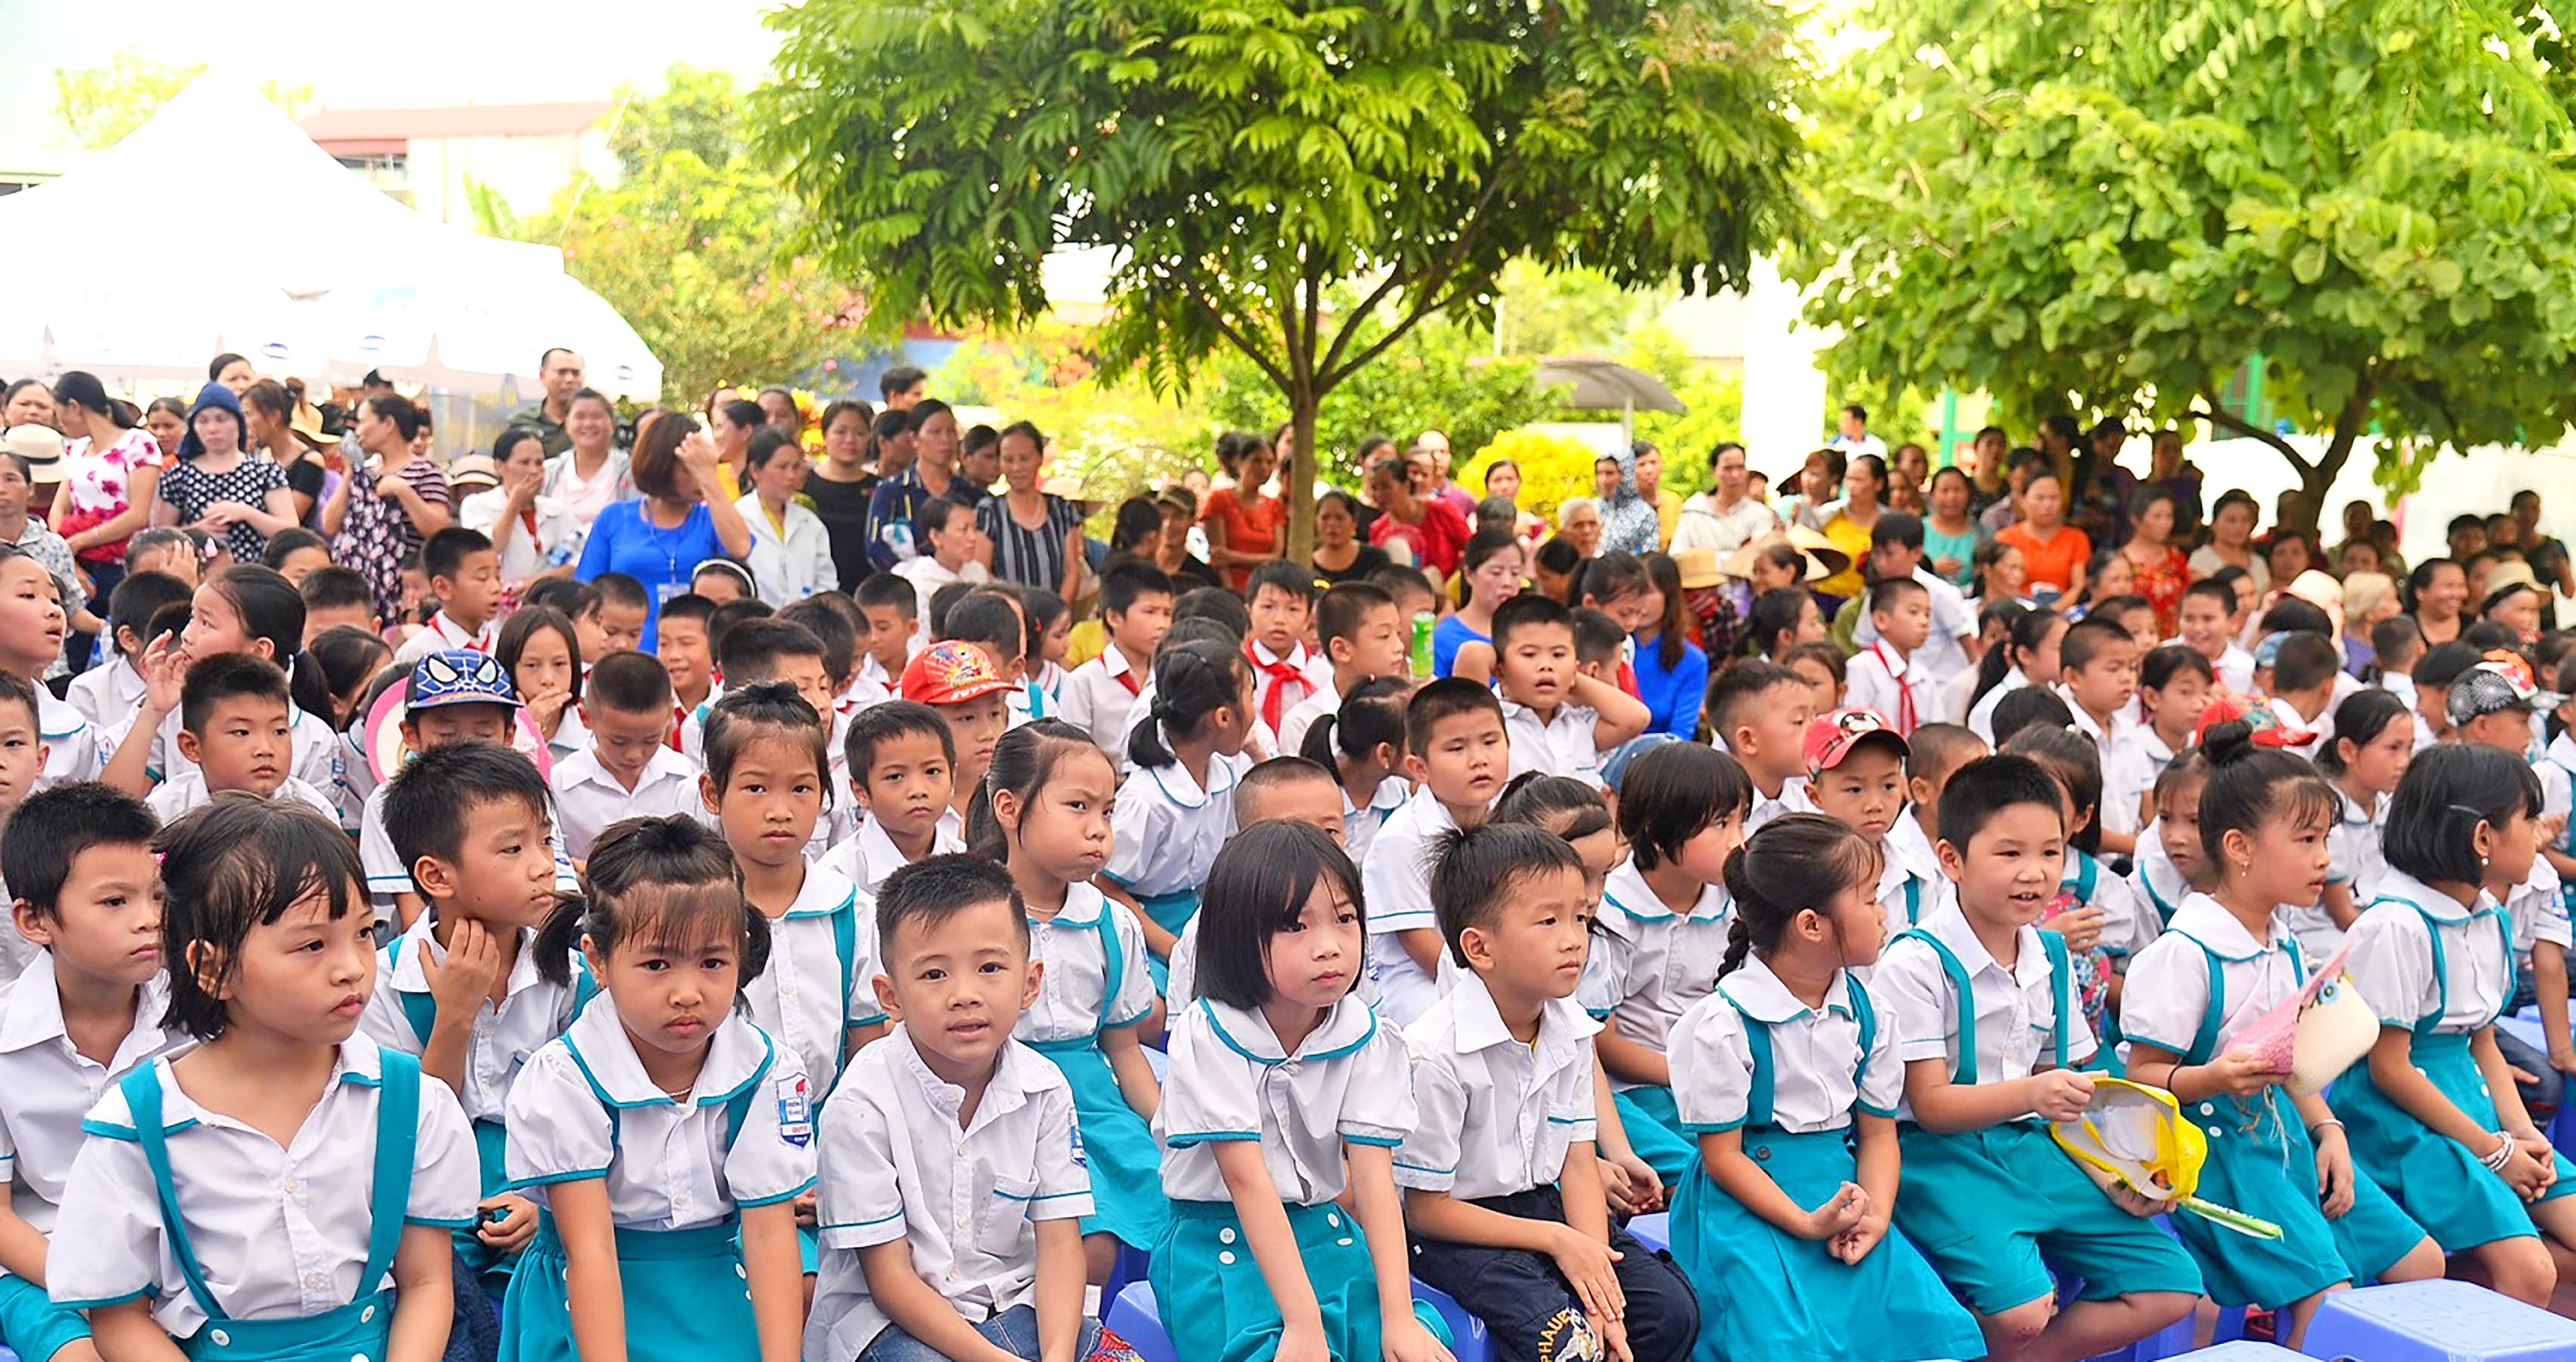 Trẻ em Việt Nam còn đang phải đối mặt với tình trạng suy dinh dưỡng thấp còi và thiếu vi chất dinh dưỡng, đây là những nguyên nhân chính ảnh hưởng xấu đến sự tăng trưởng chiều cao và trí tuệ của các em. Ảnh: P.V